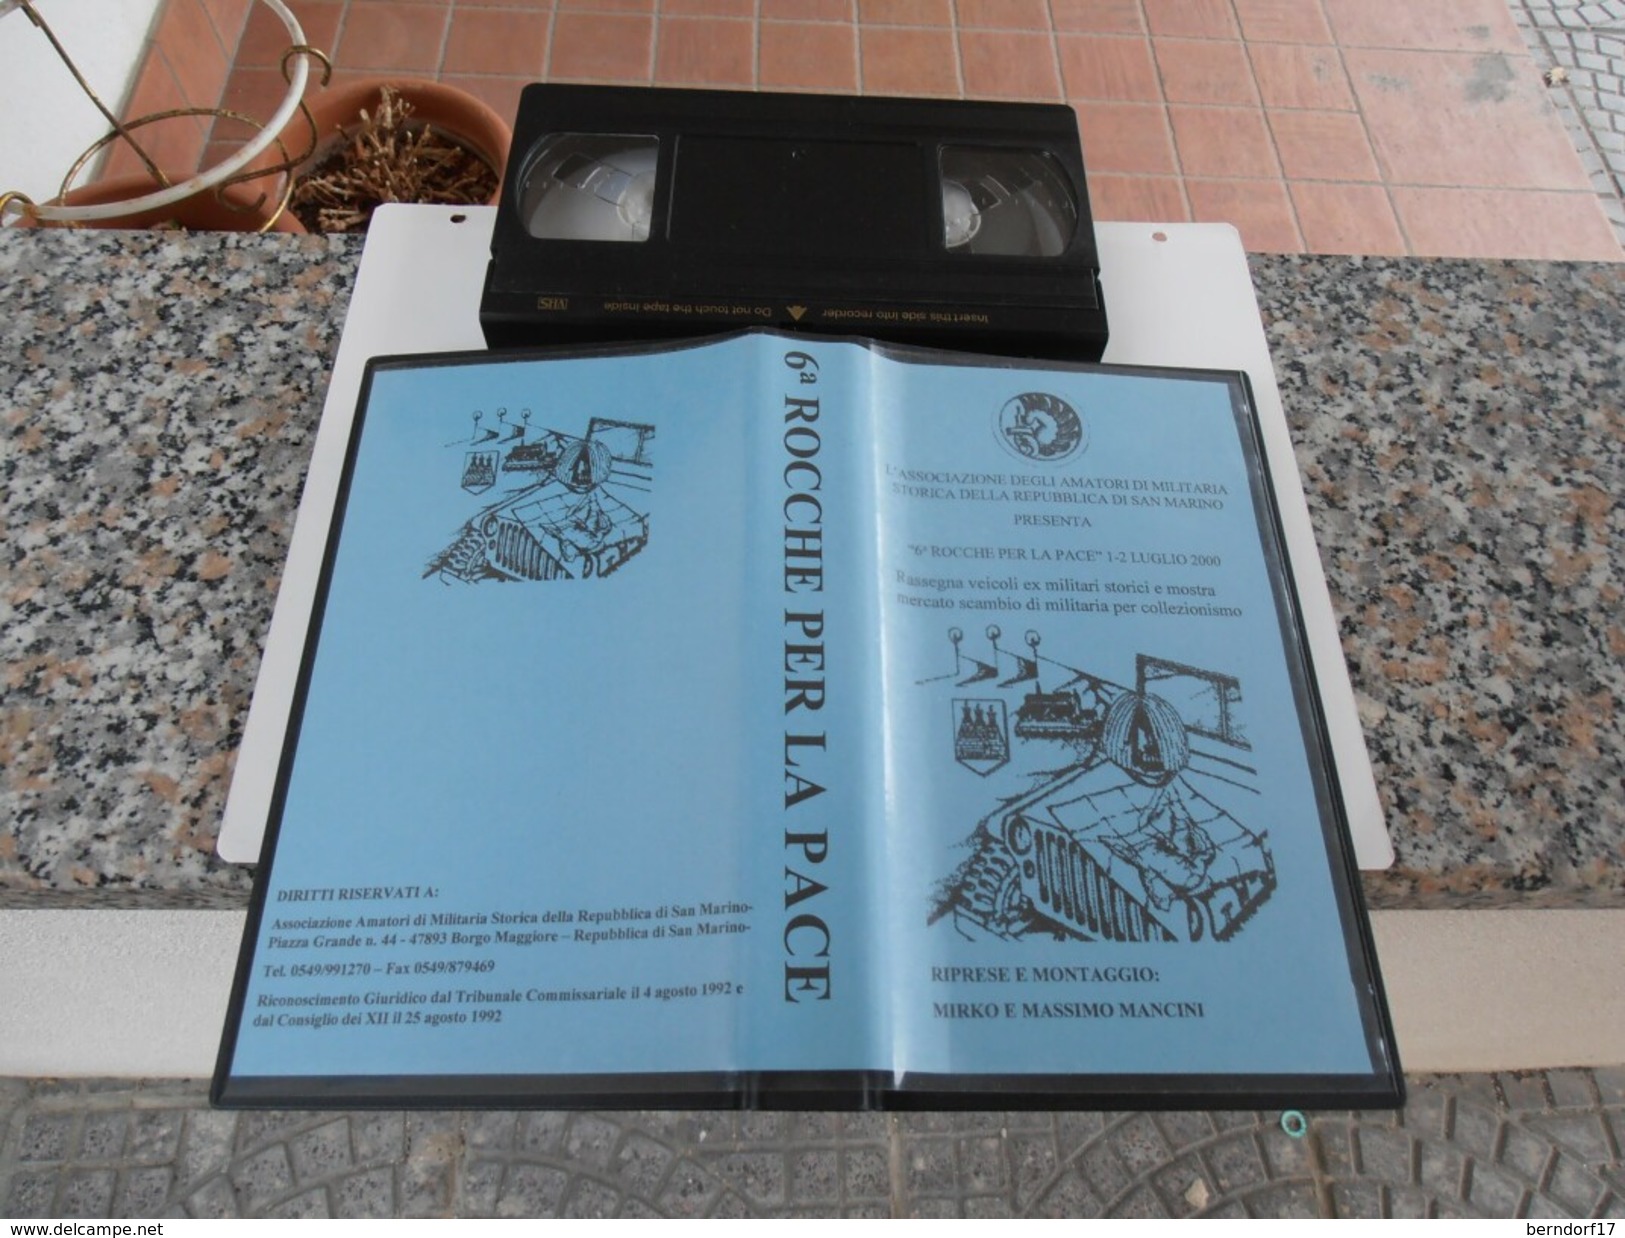 Repubblica Di San Marino - Rocche Per La Pace - VHS - History